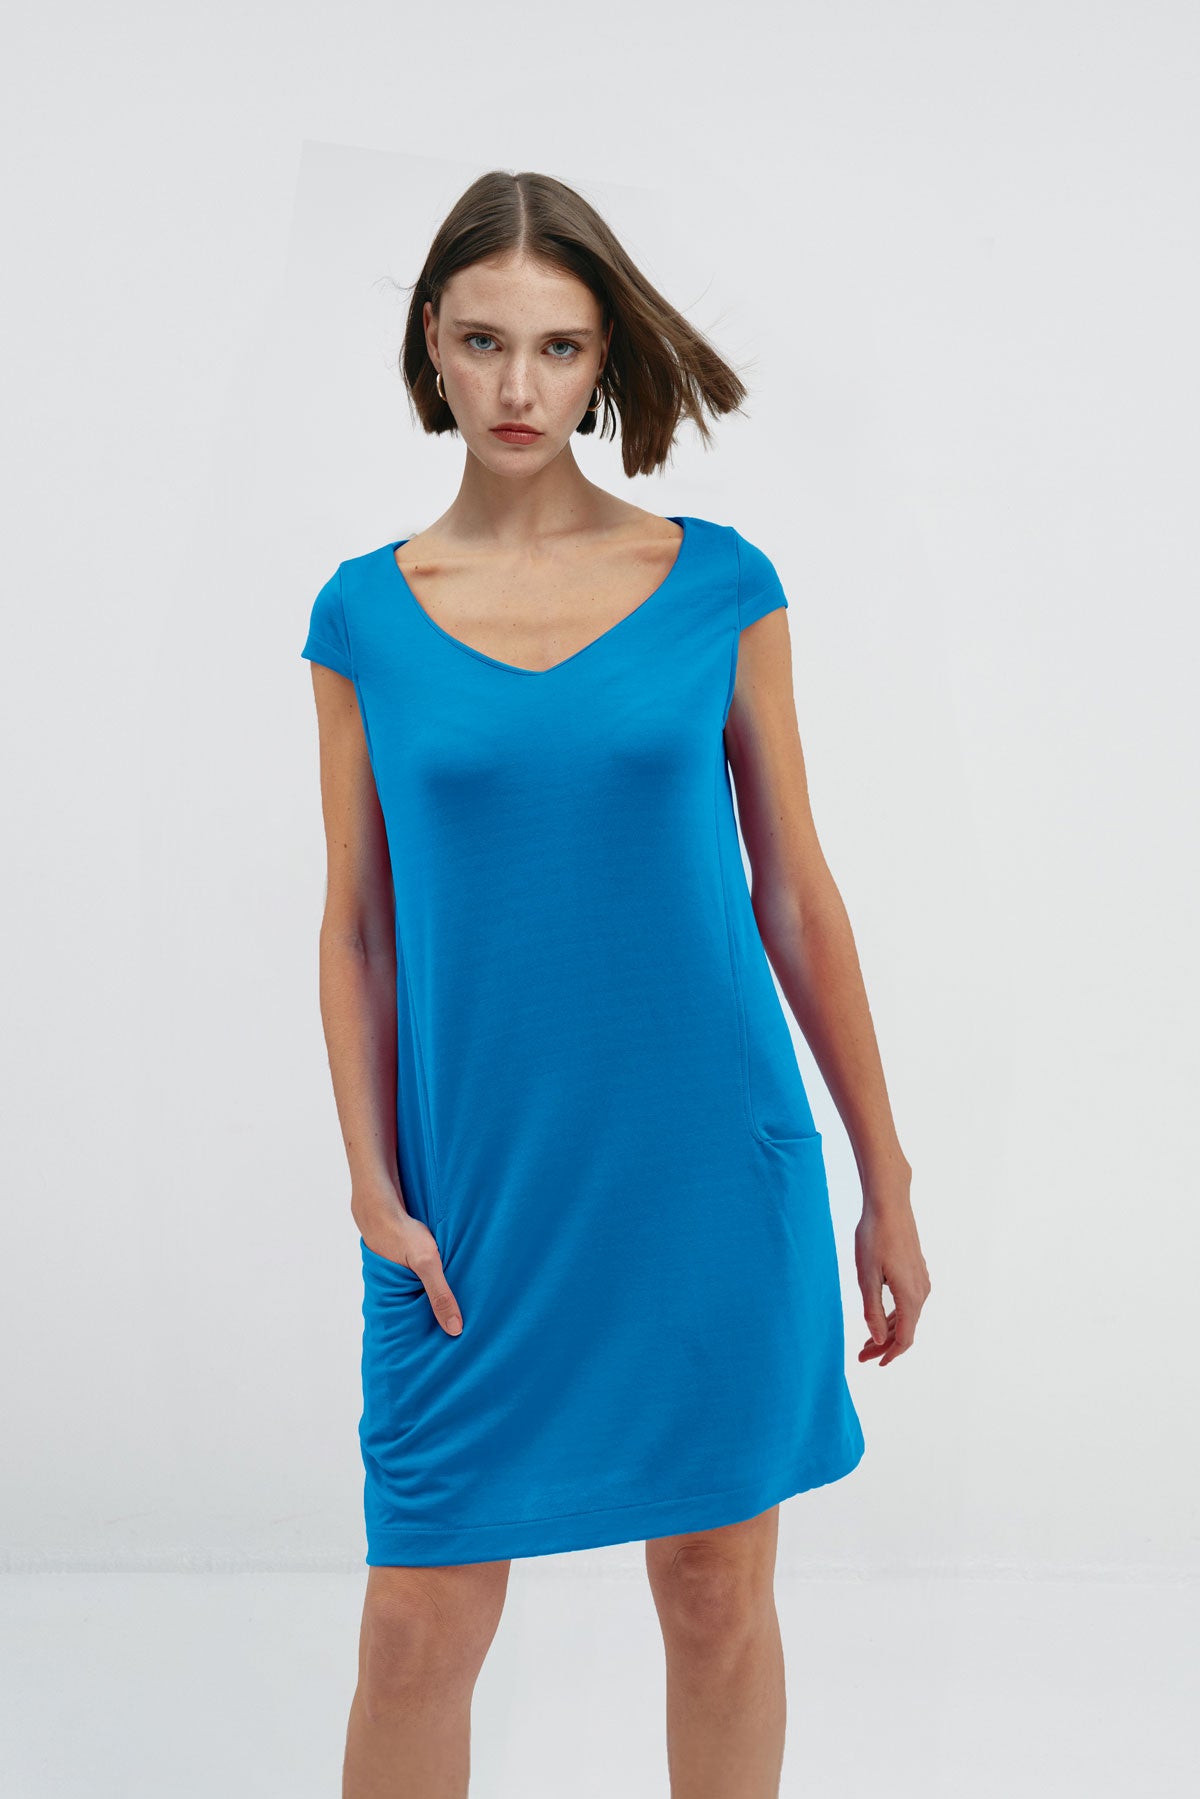 Vestido holgado de mujer con cuello redondo y bolsillos en color azul, perfecto para el verano. Foto frente